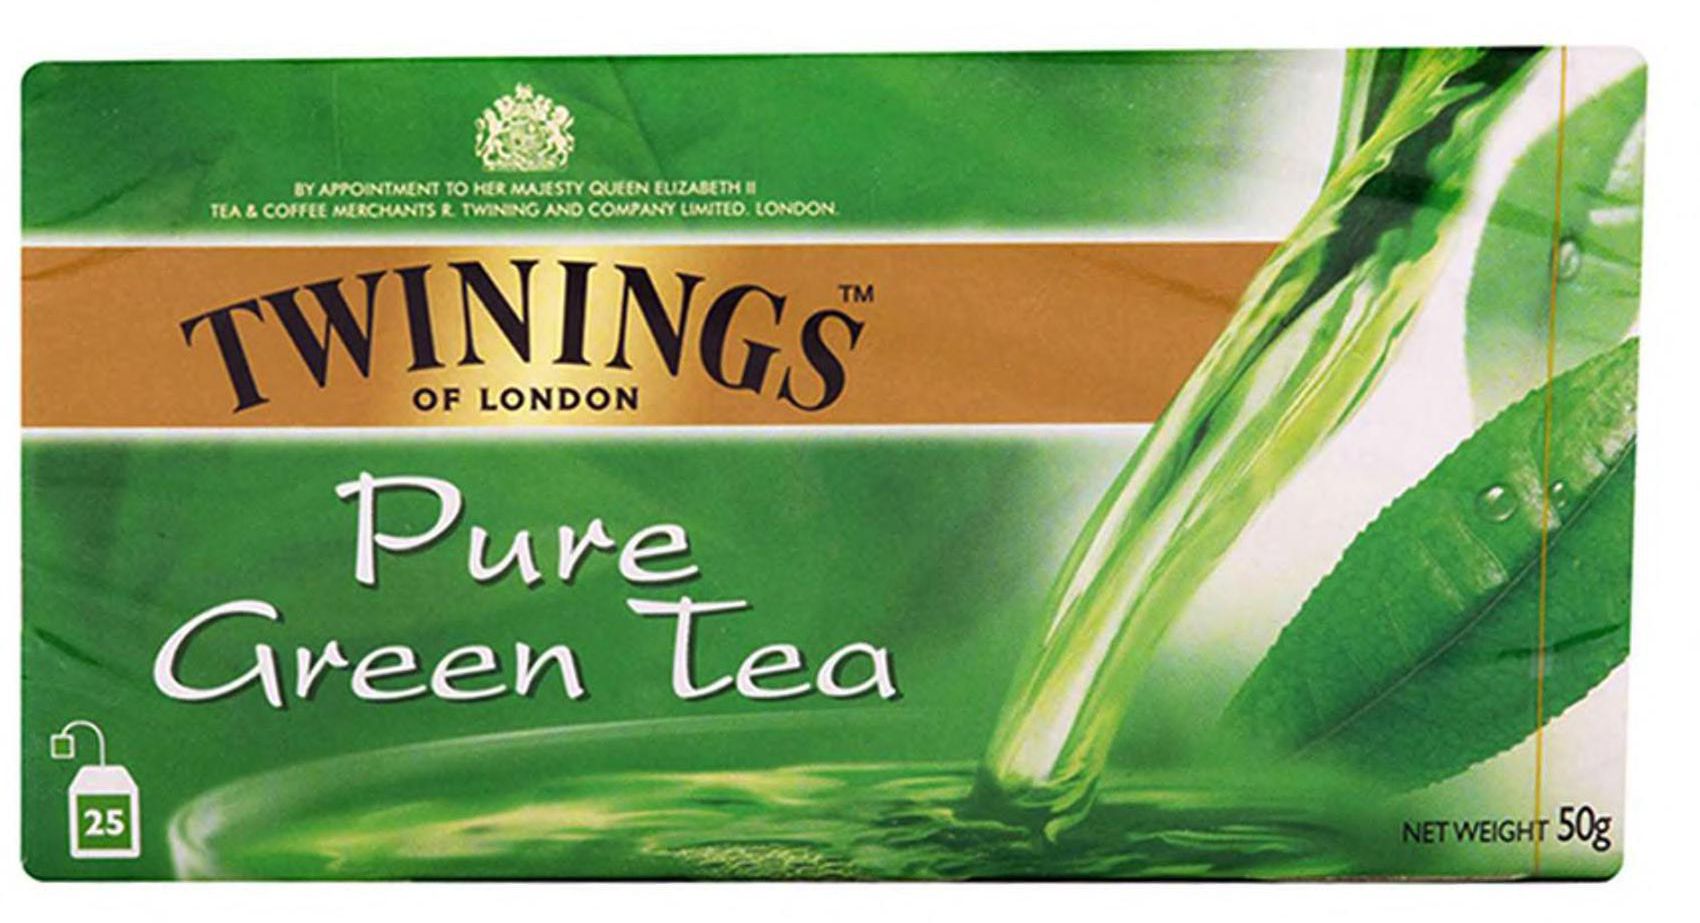 تويننغز شاي اخضر 25 كيس × 2 جرام